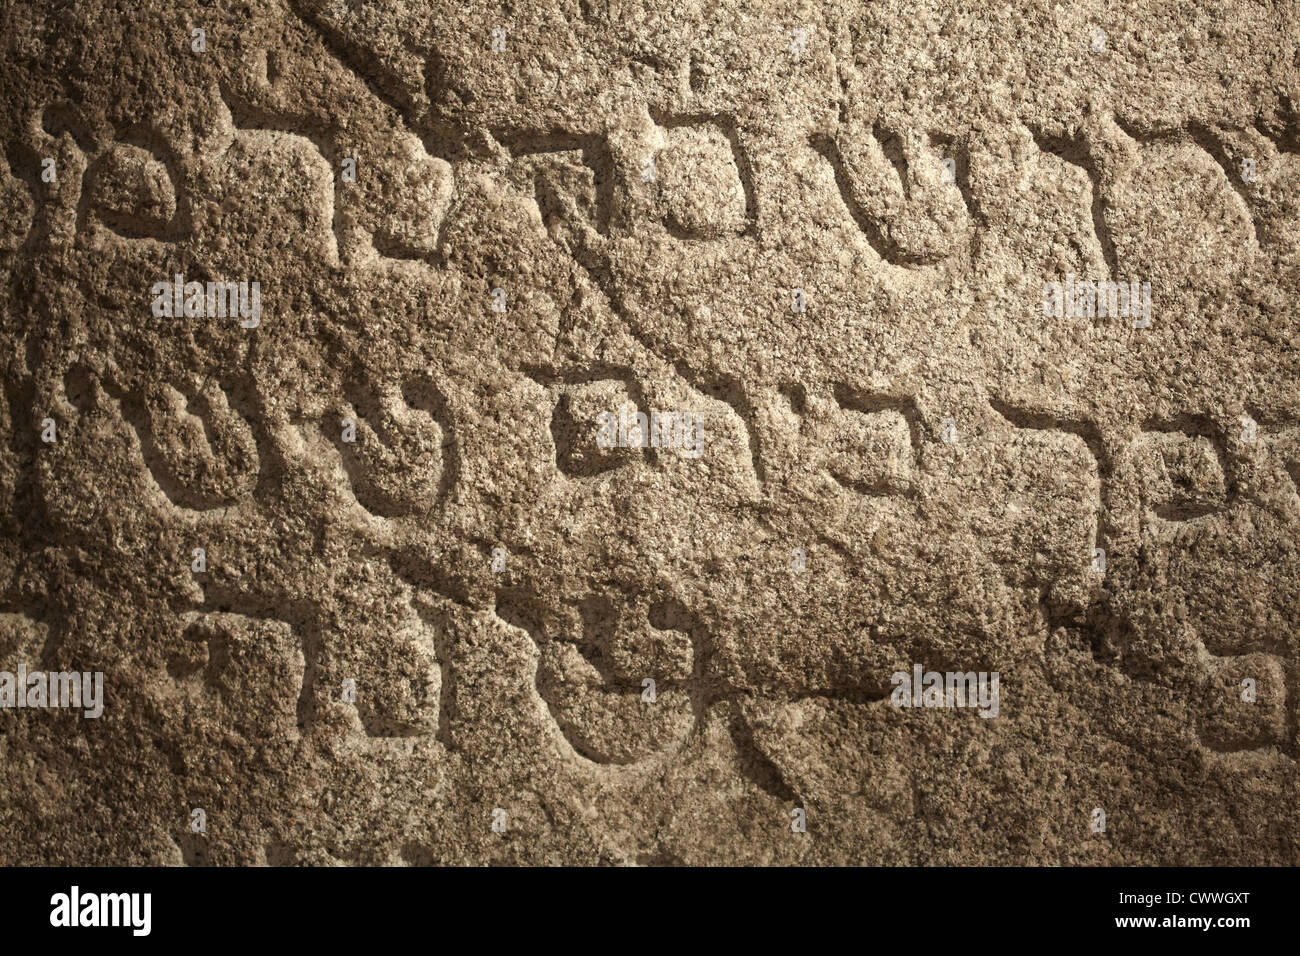 Anciennes Écritures juives sur la surface en pierre Banque D'Images